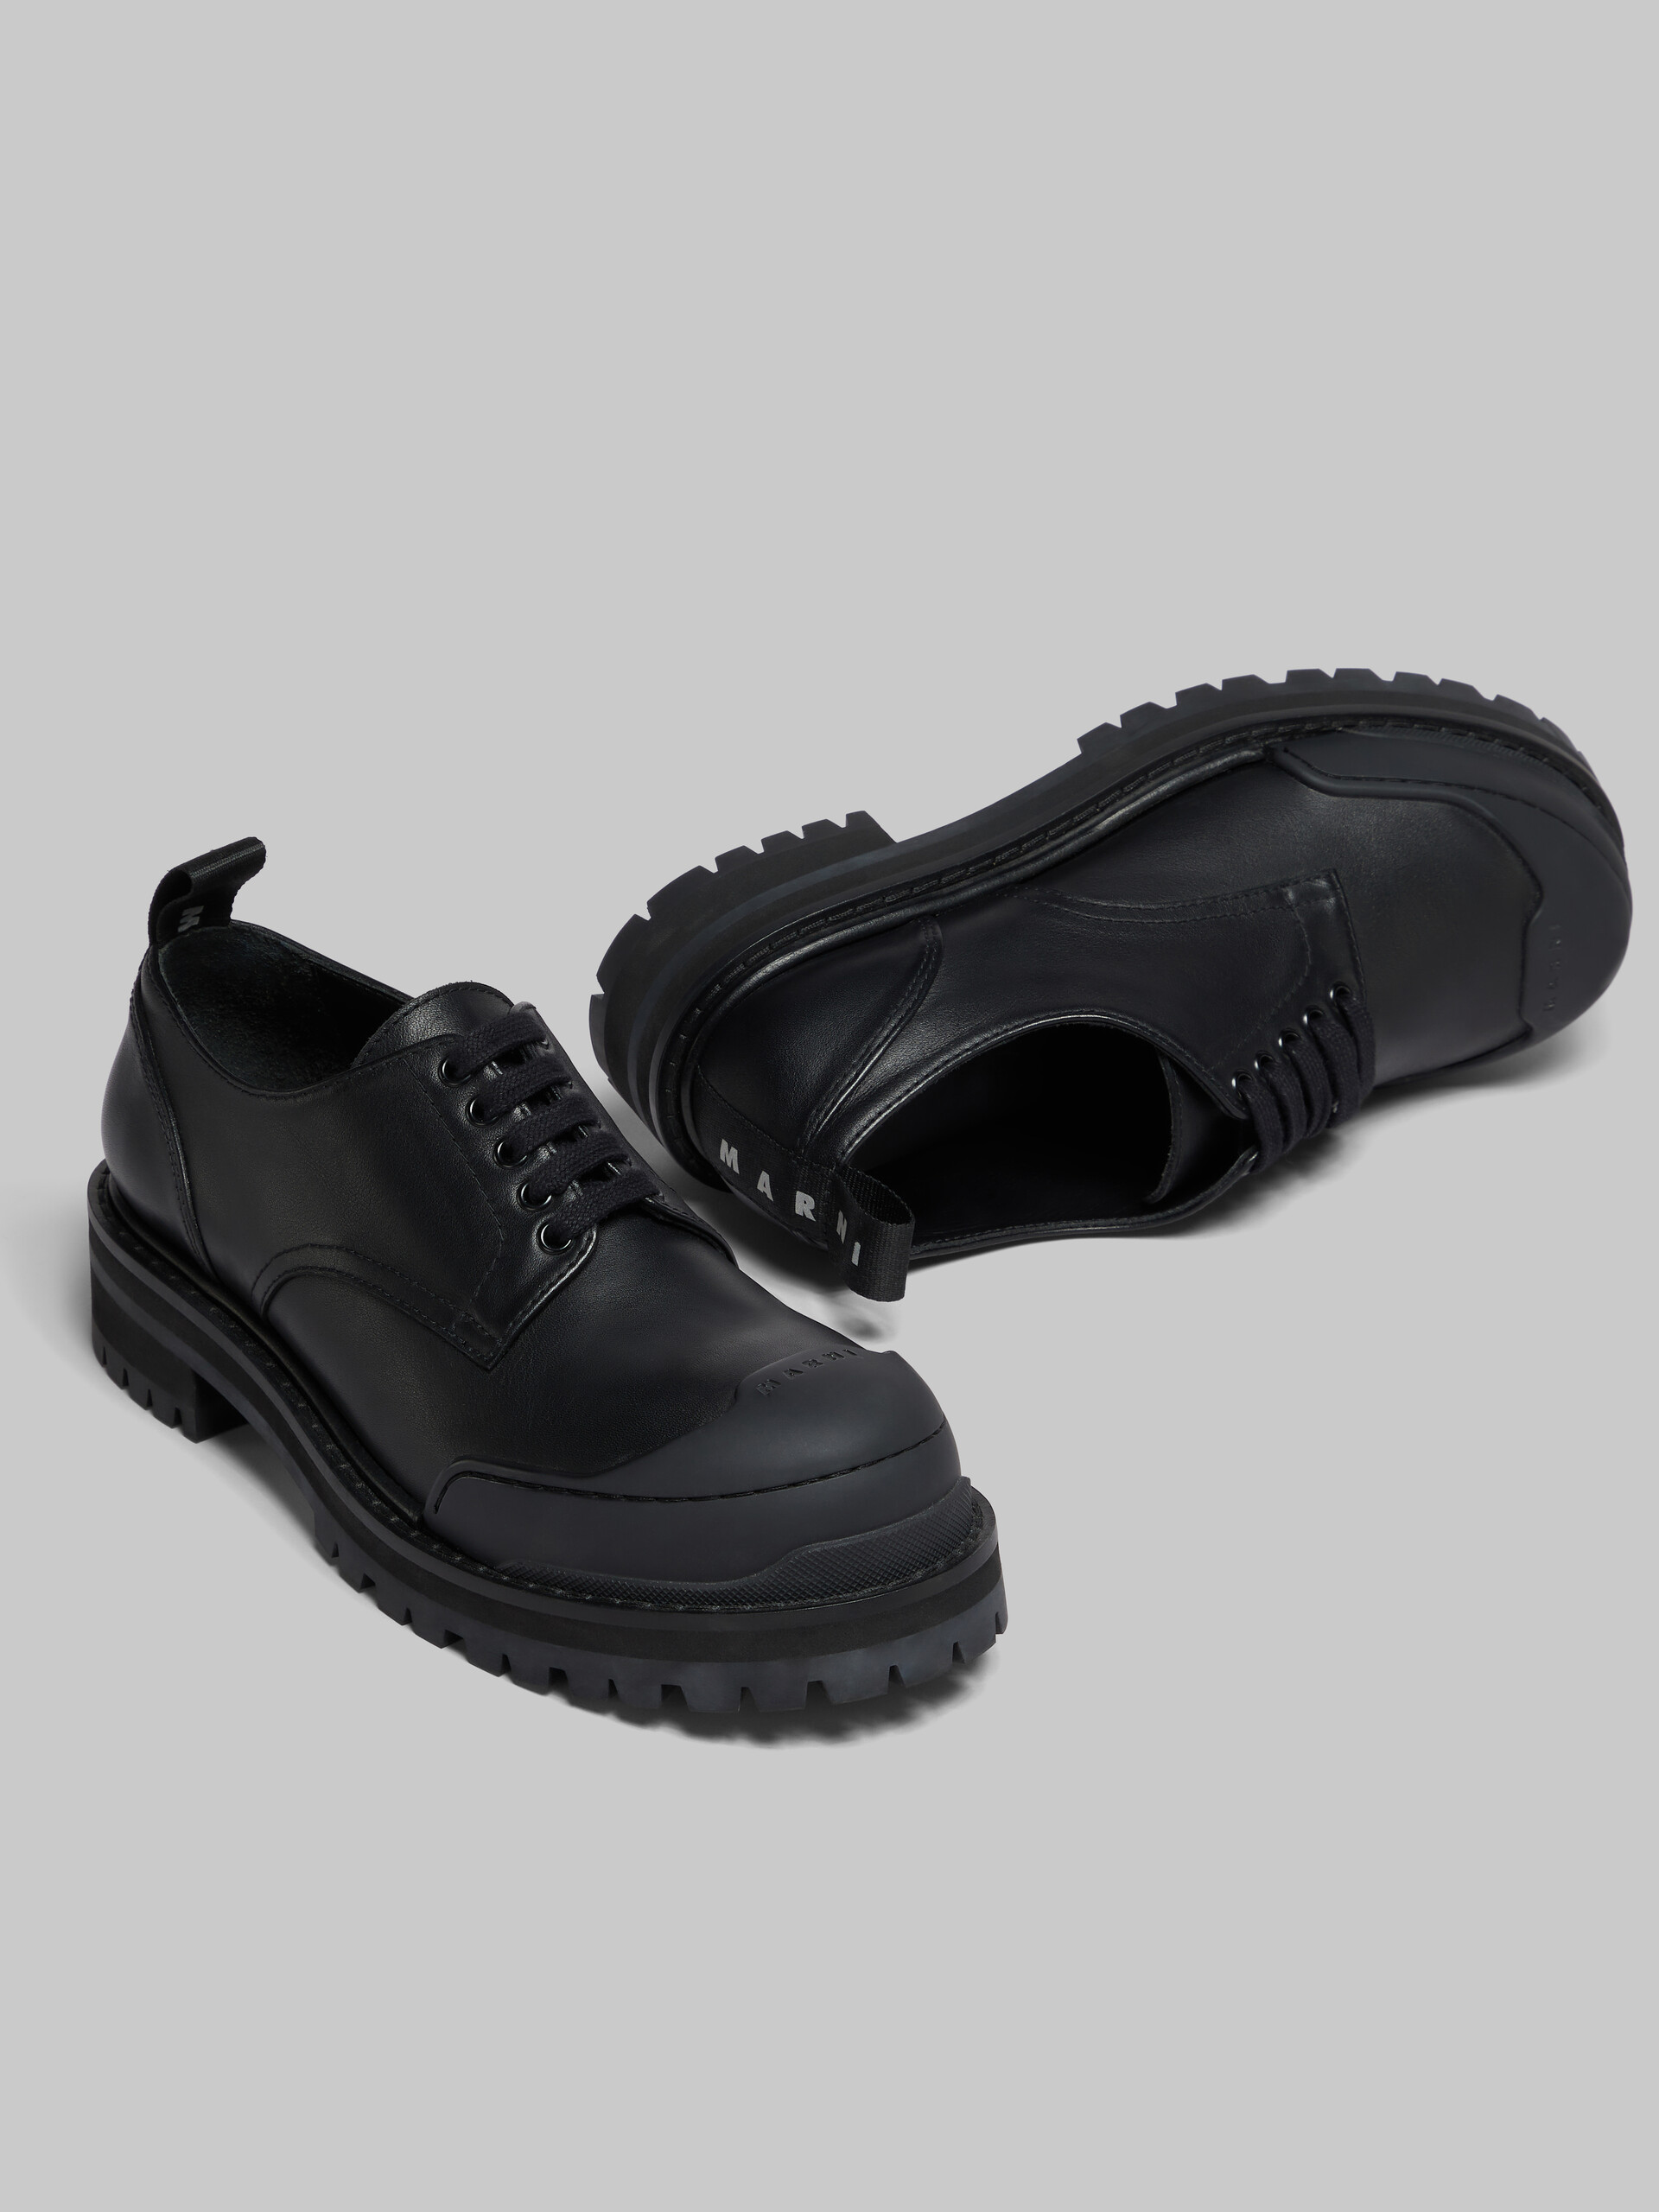 Zapato Derby Dada Army de piel negra - Zapatos con cordones - Image 4